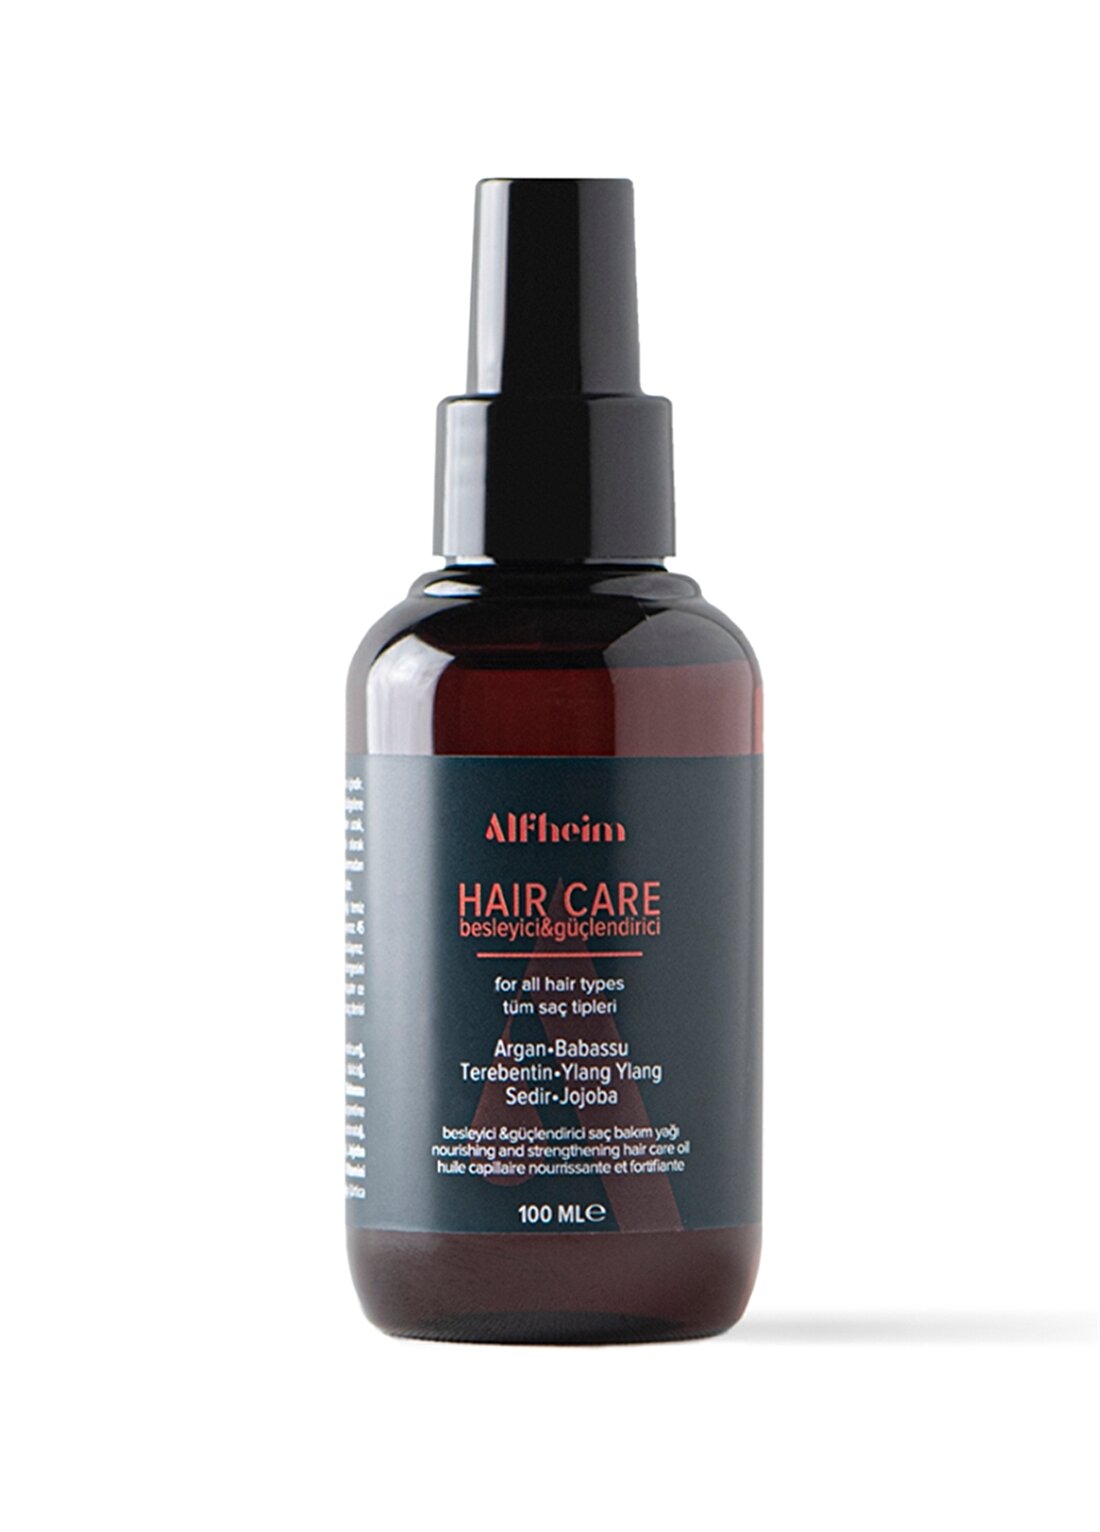 Alfheim Hair Care Oil